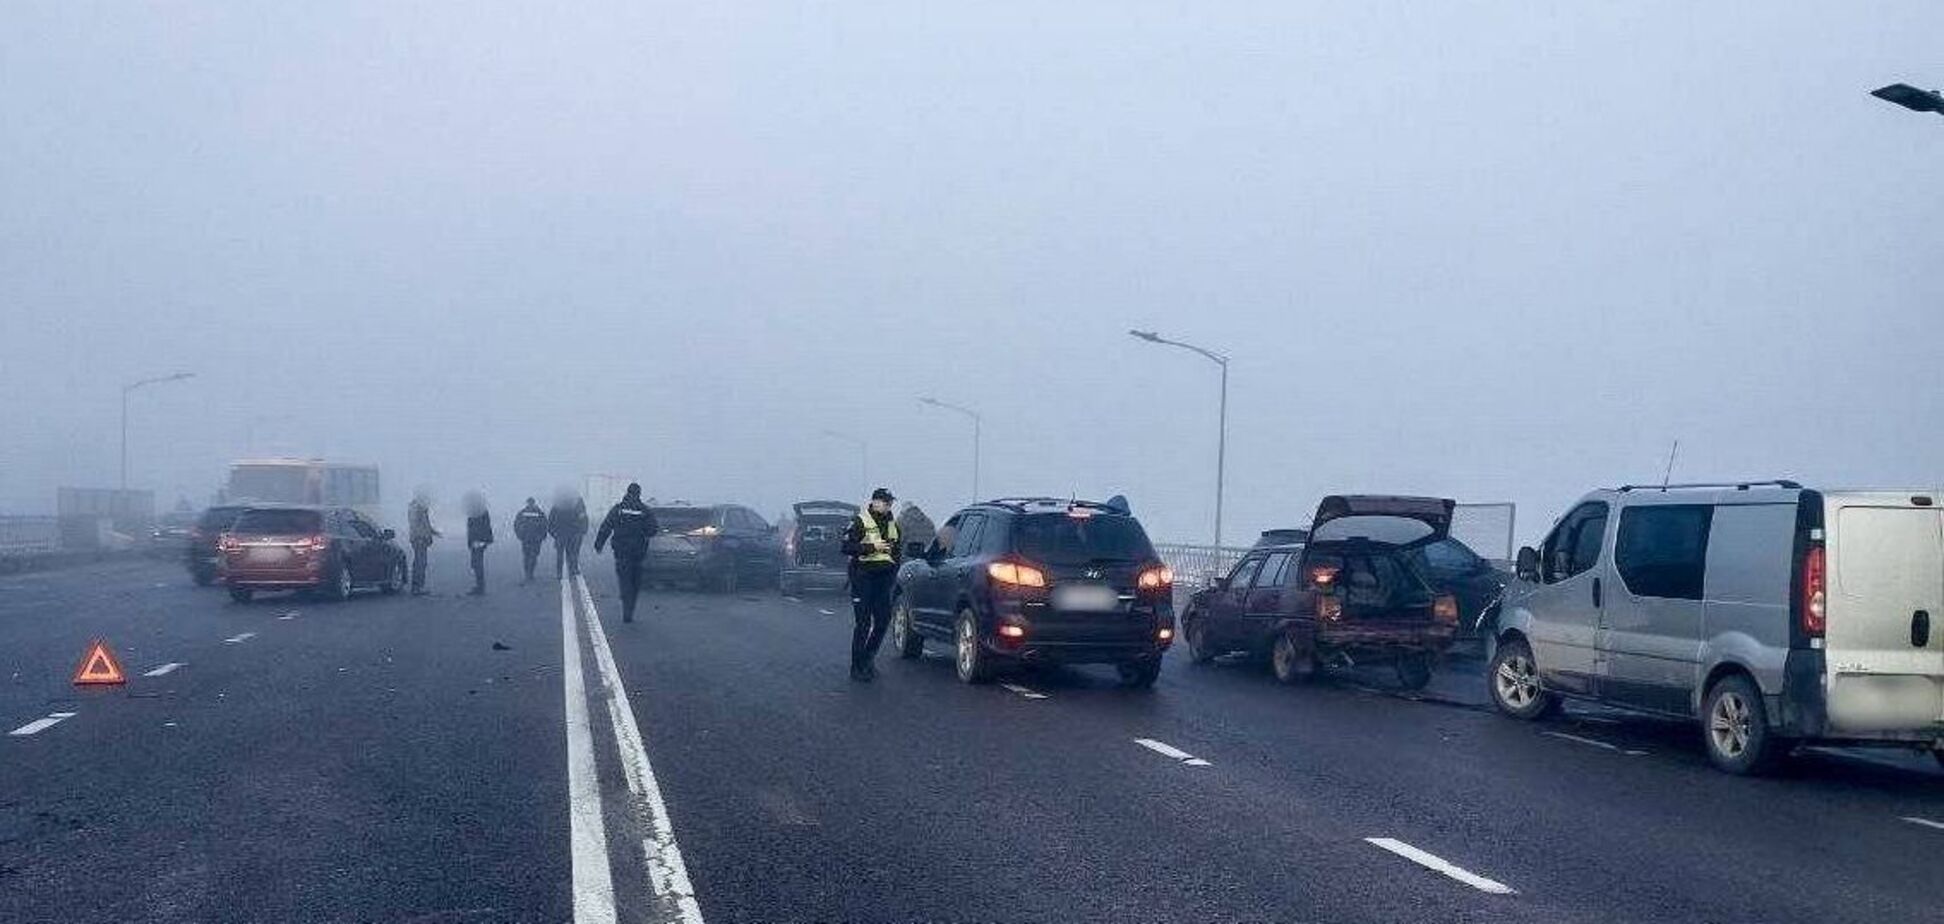 Во Львове произошло масштабное ДТП, столкнулись 27 авто: появились подробности и видео с места аварии